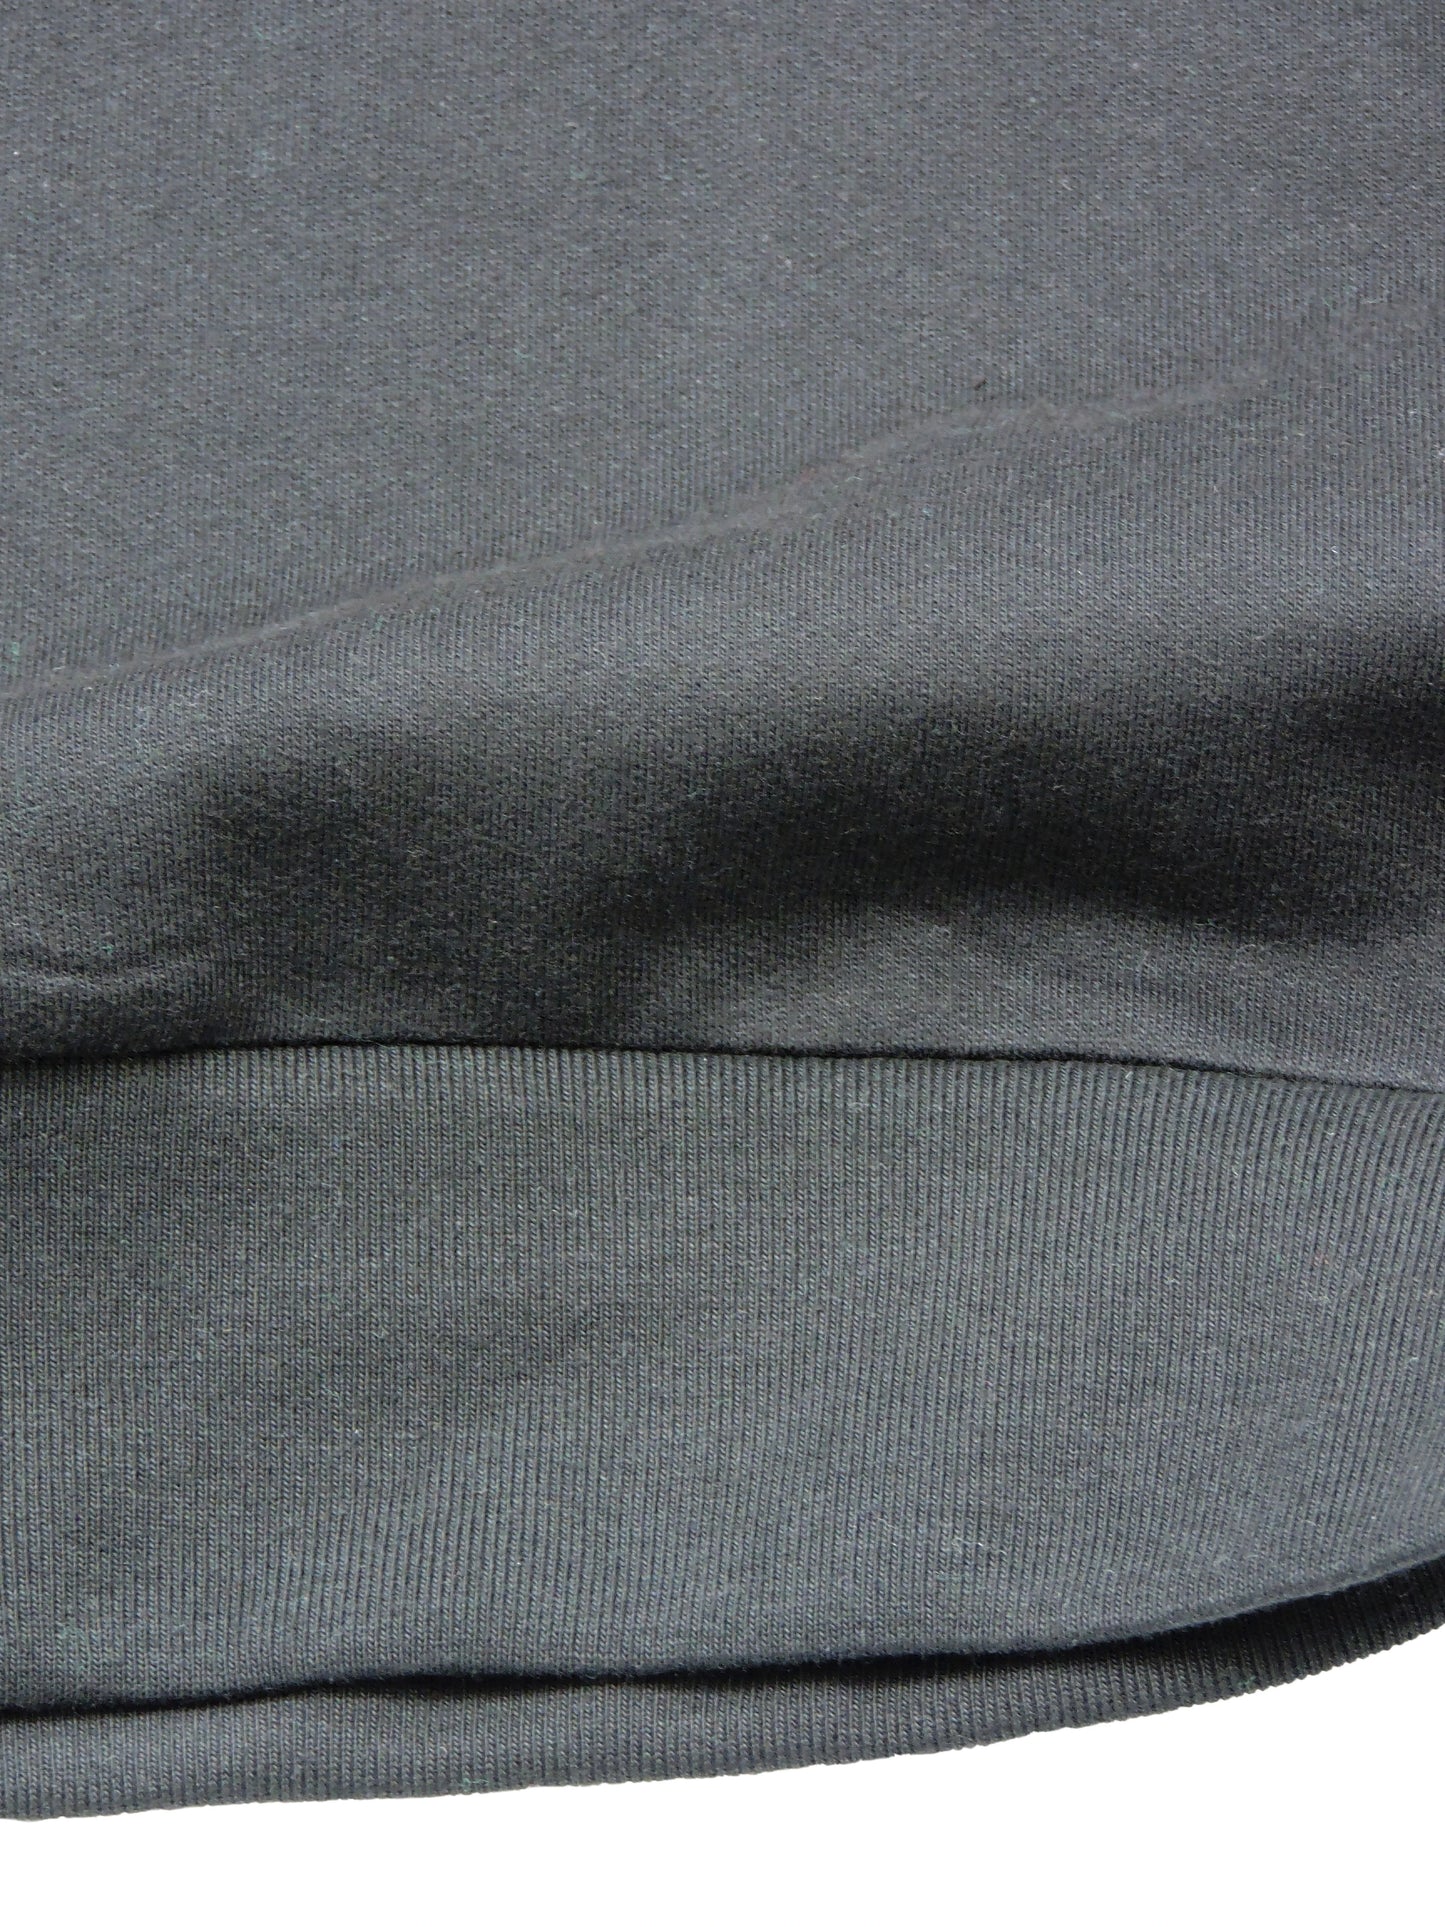 Close up of material and waist ribbing